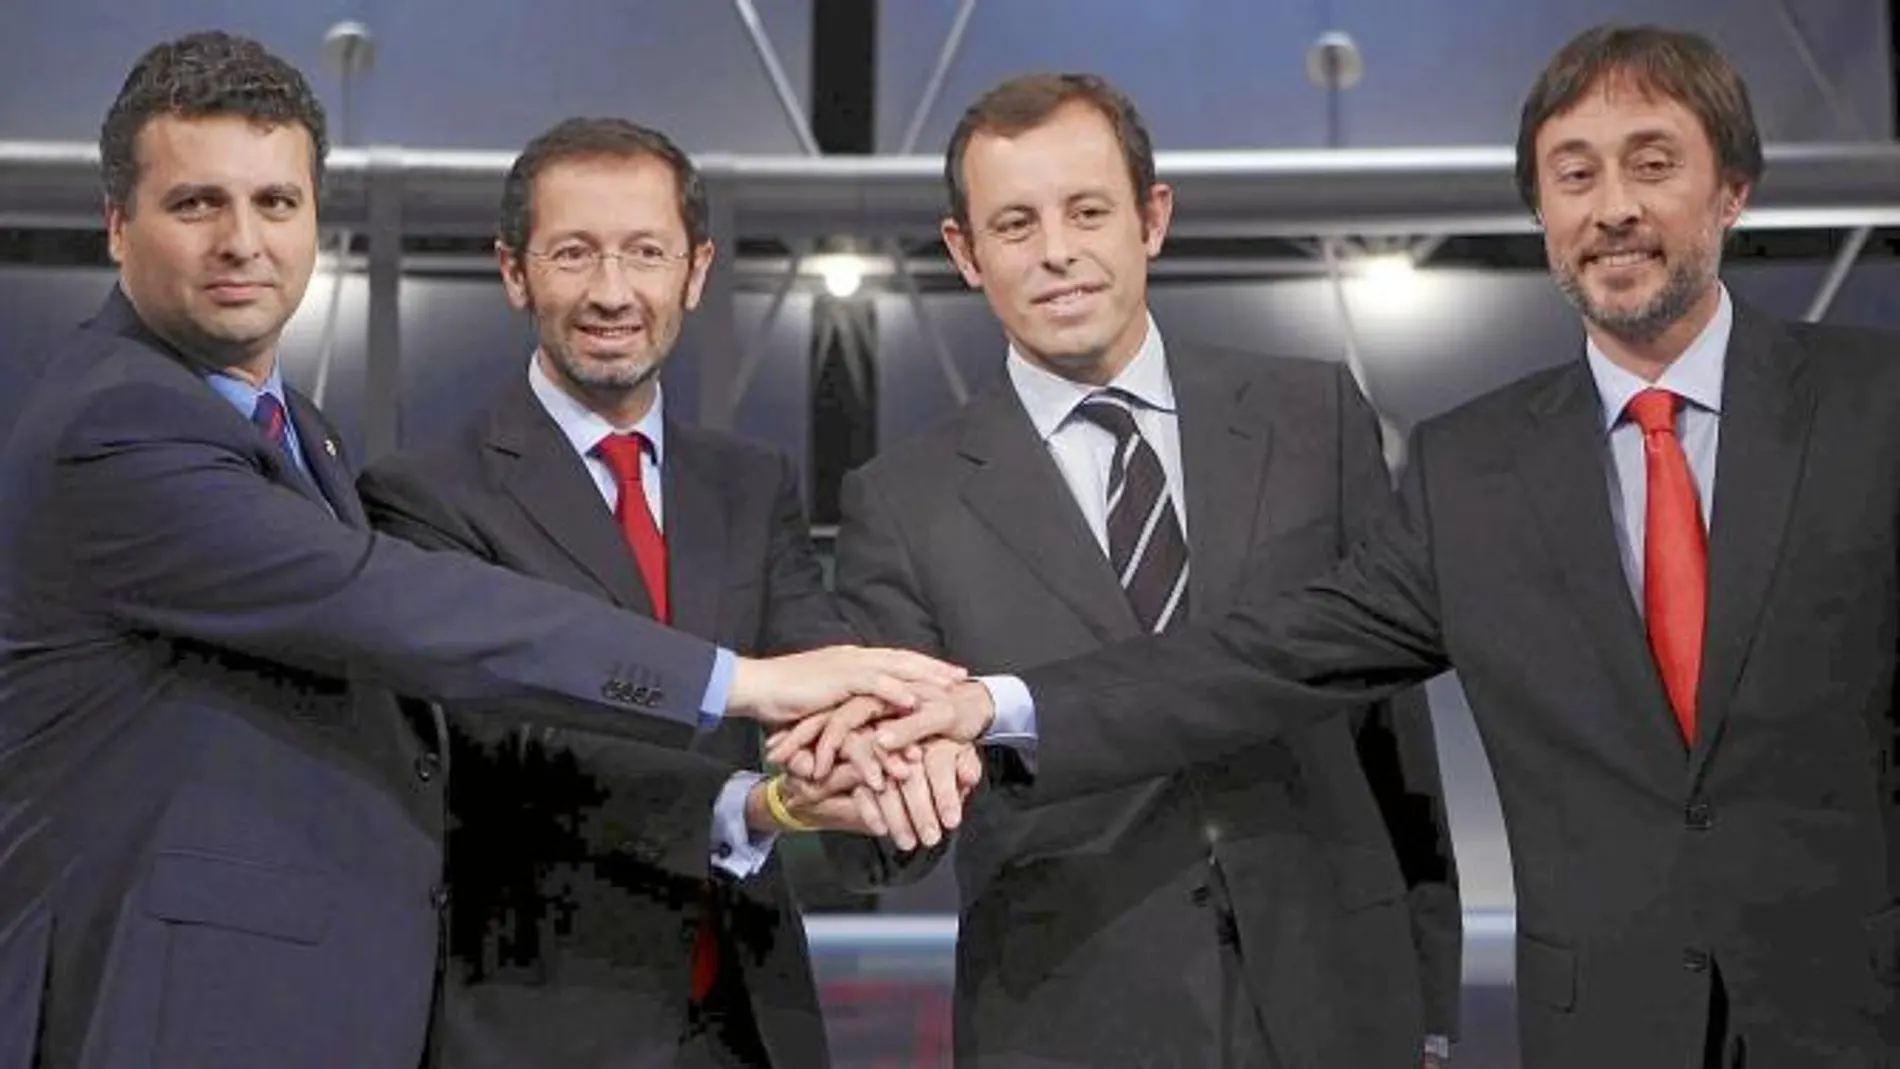 Jaume Ferrer, Marc Ingla, Sandro Rosell y Agustí Benedito, los cuatro candidatos en las últimas elecciones a la presidencia del Barcelona